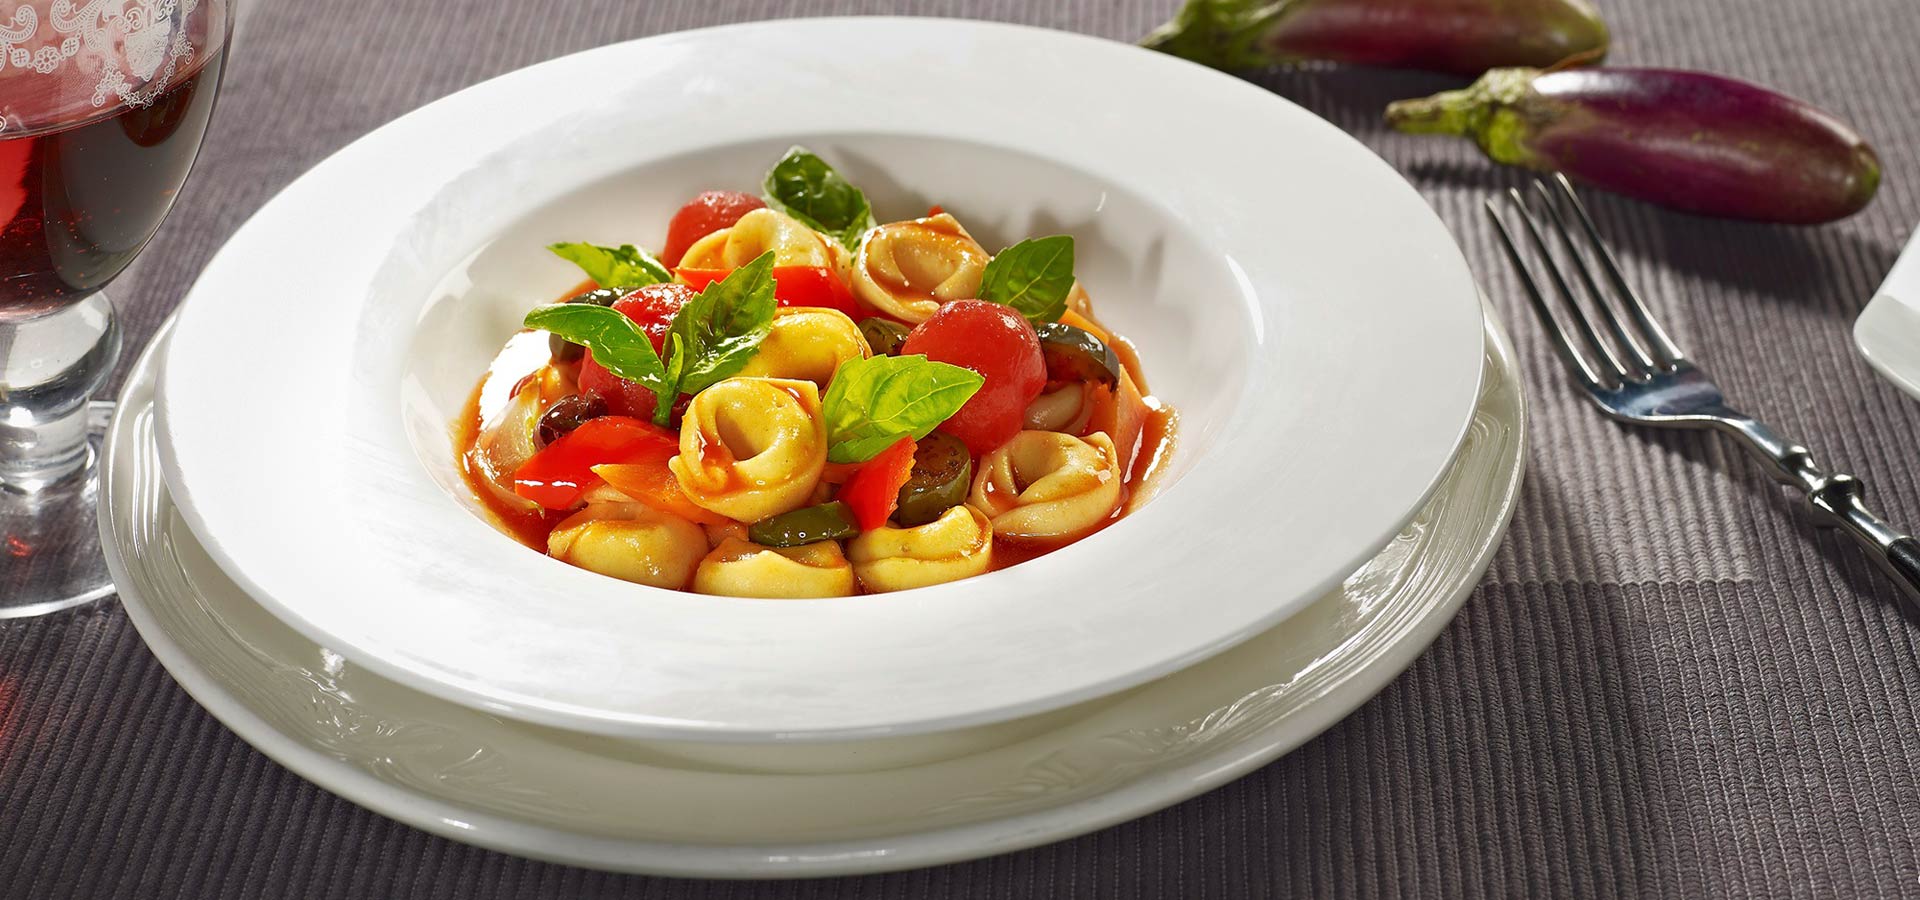 dangelo-pasta-Plate-tortellini-Vegetables-gallery